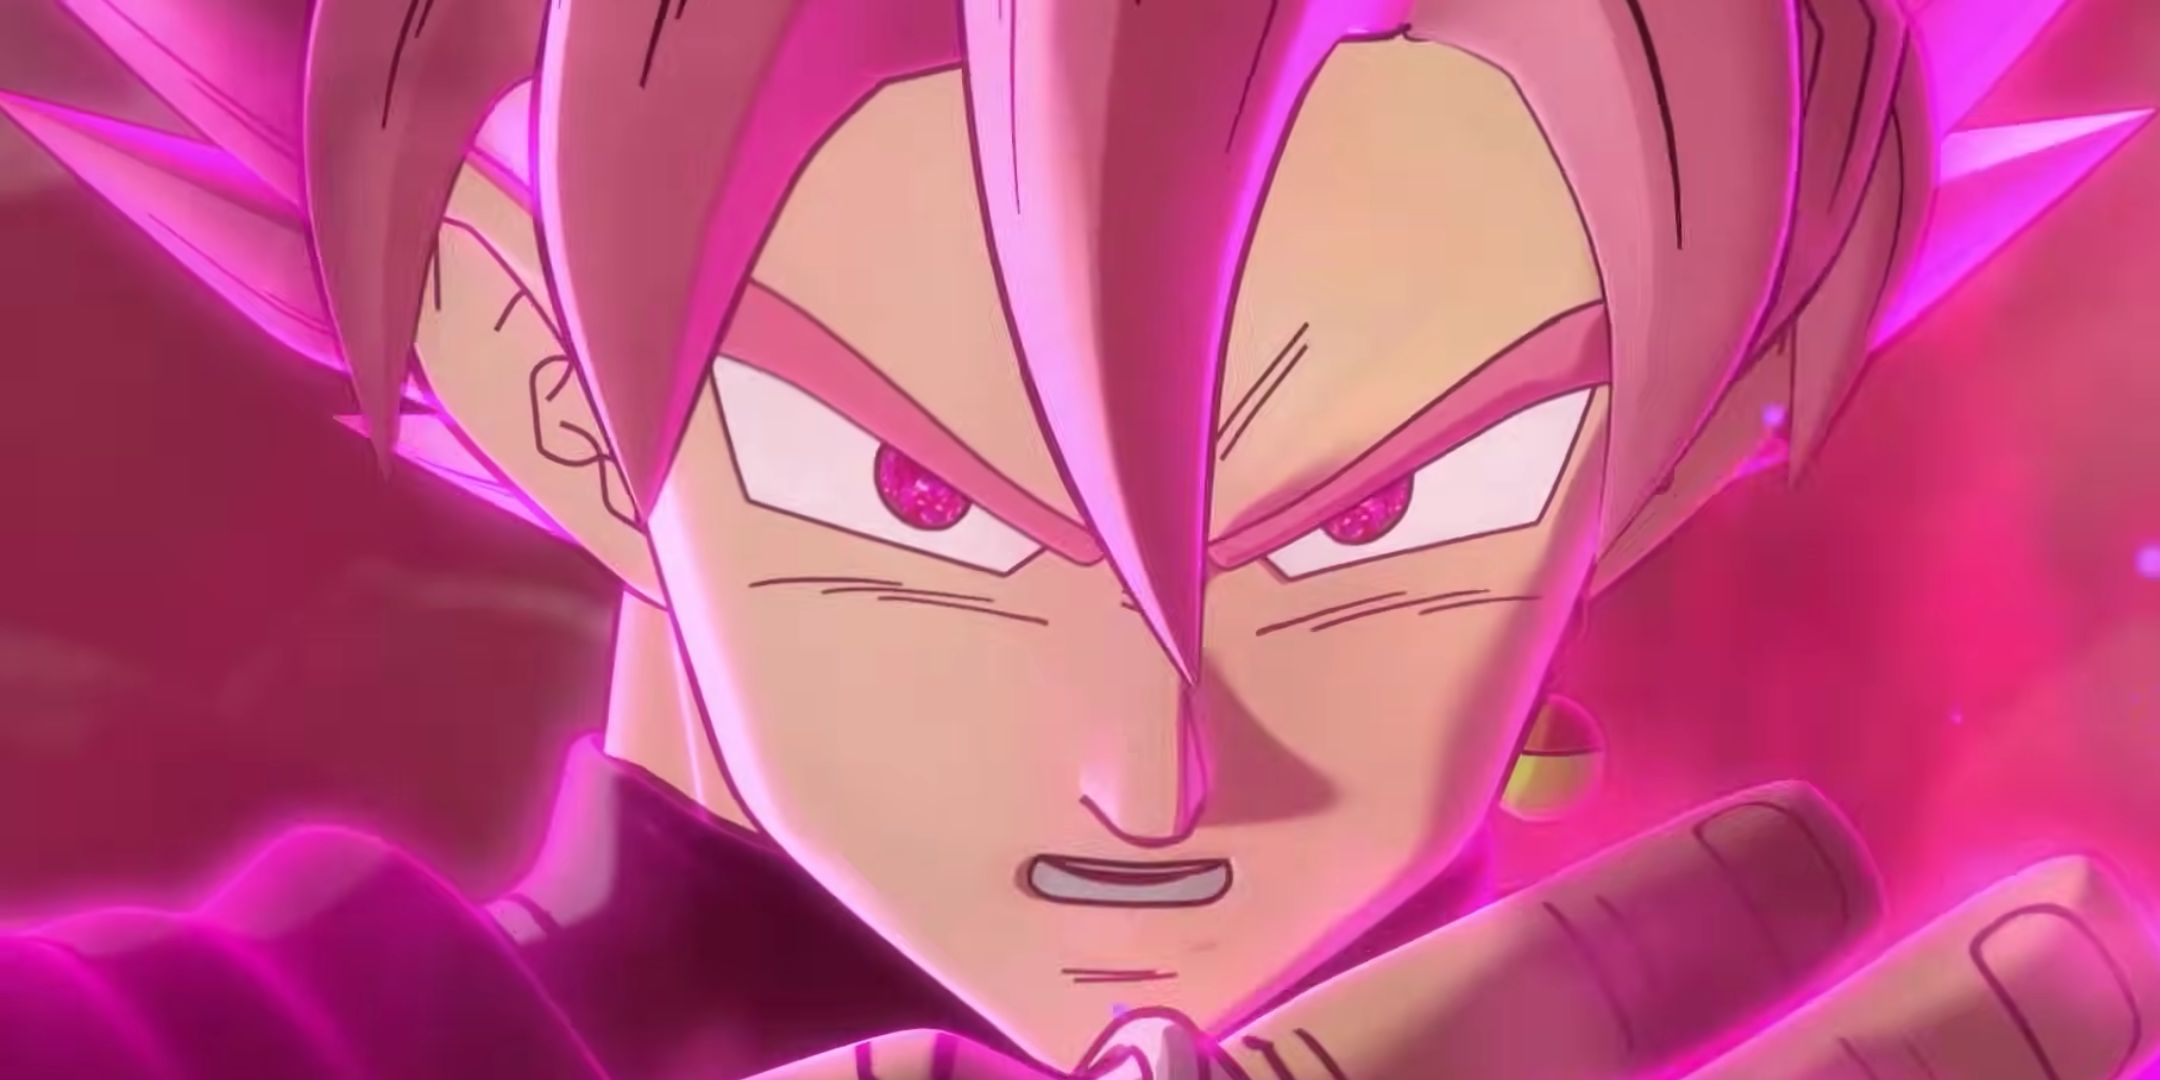 Goku Black's ultra villainous mode in Xenoverse 2.